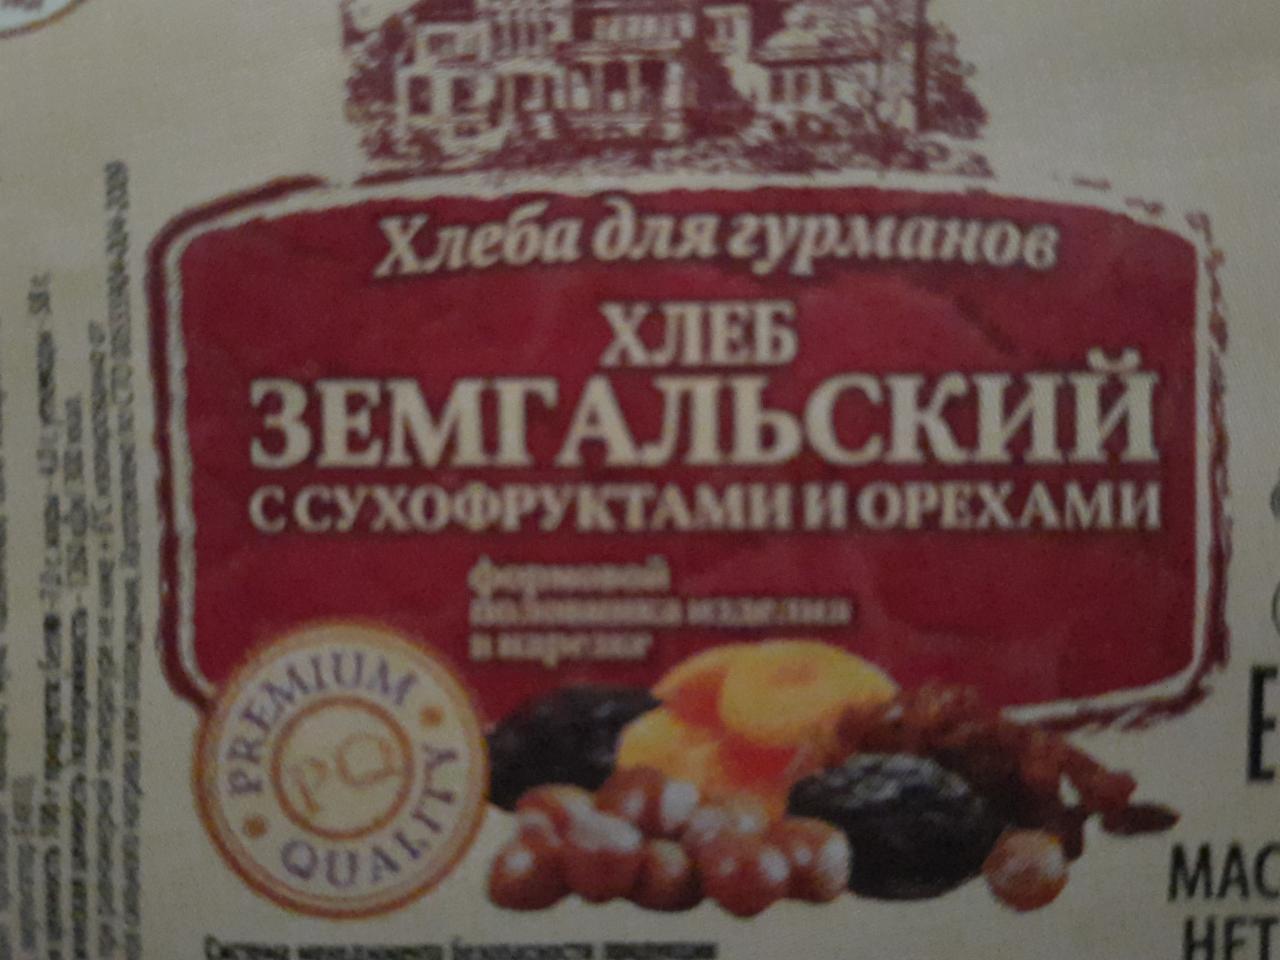 Фото - хлеб земгальский с орехами и сухофруктами Хлебозавод №5 Волгоград